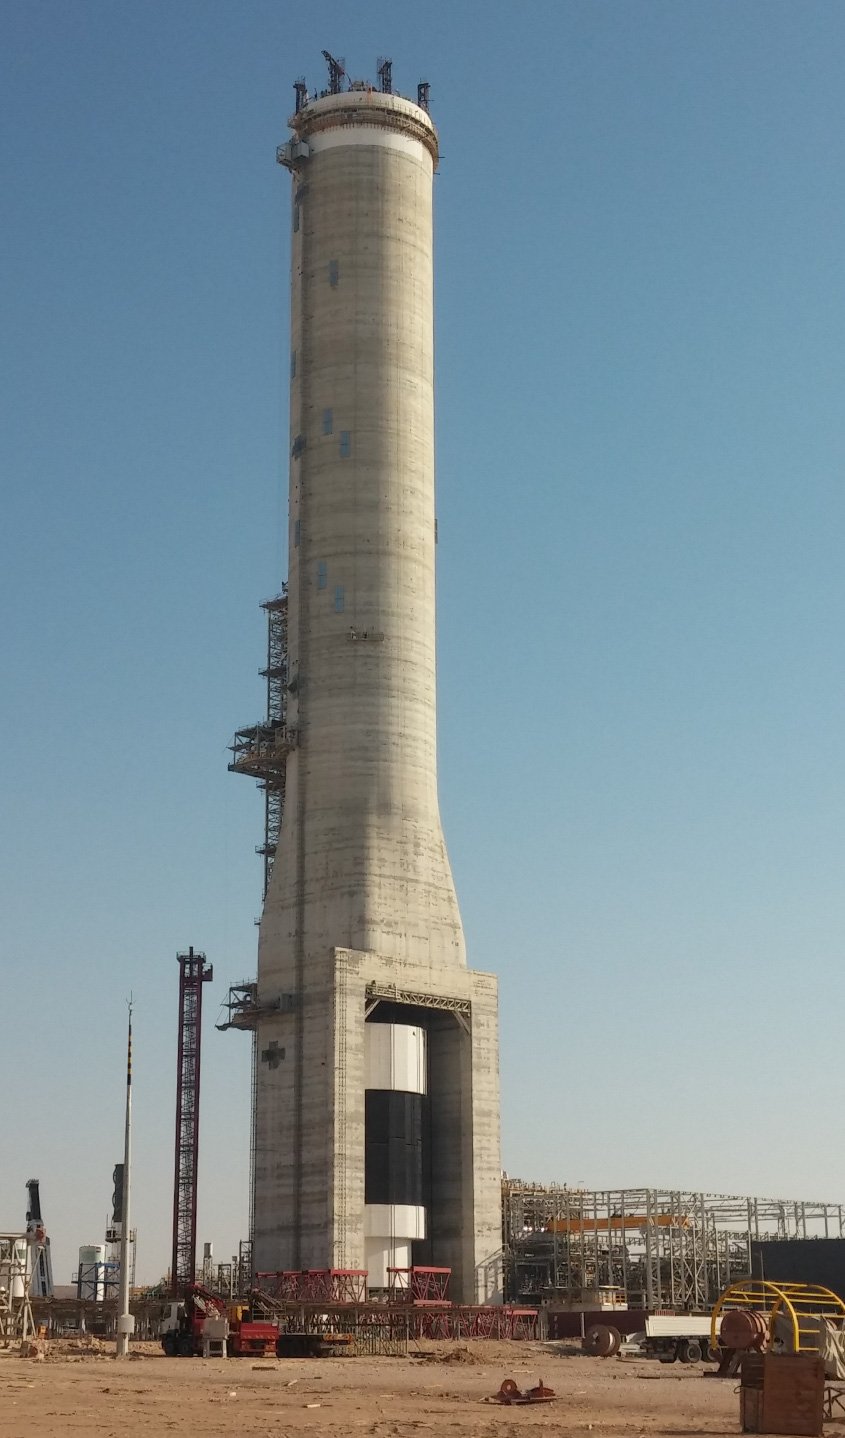 La tour s’apparente à une gigantesque cage d’ascenseur imaginée pour positionner le four solaire en son sommet.